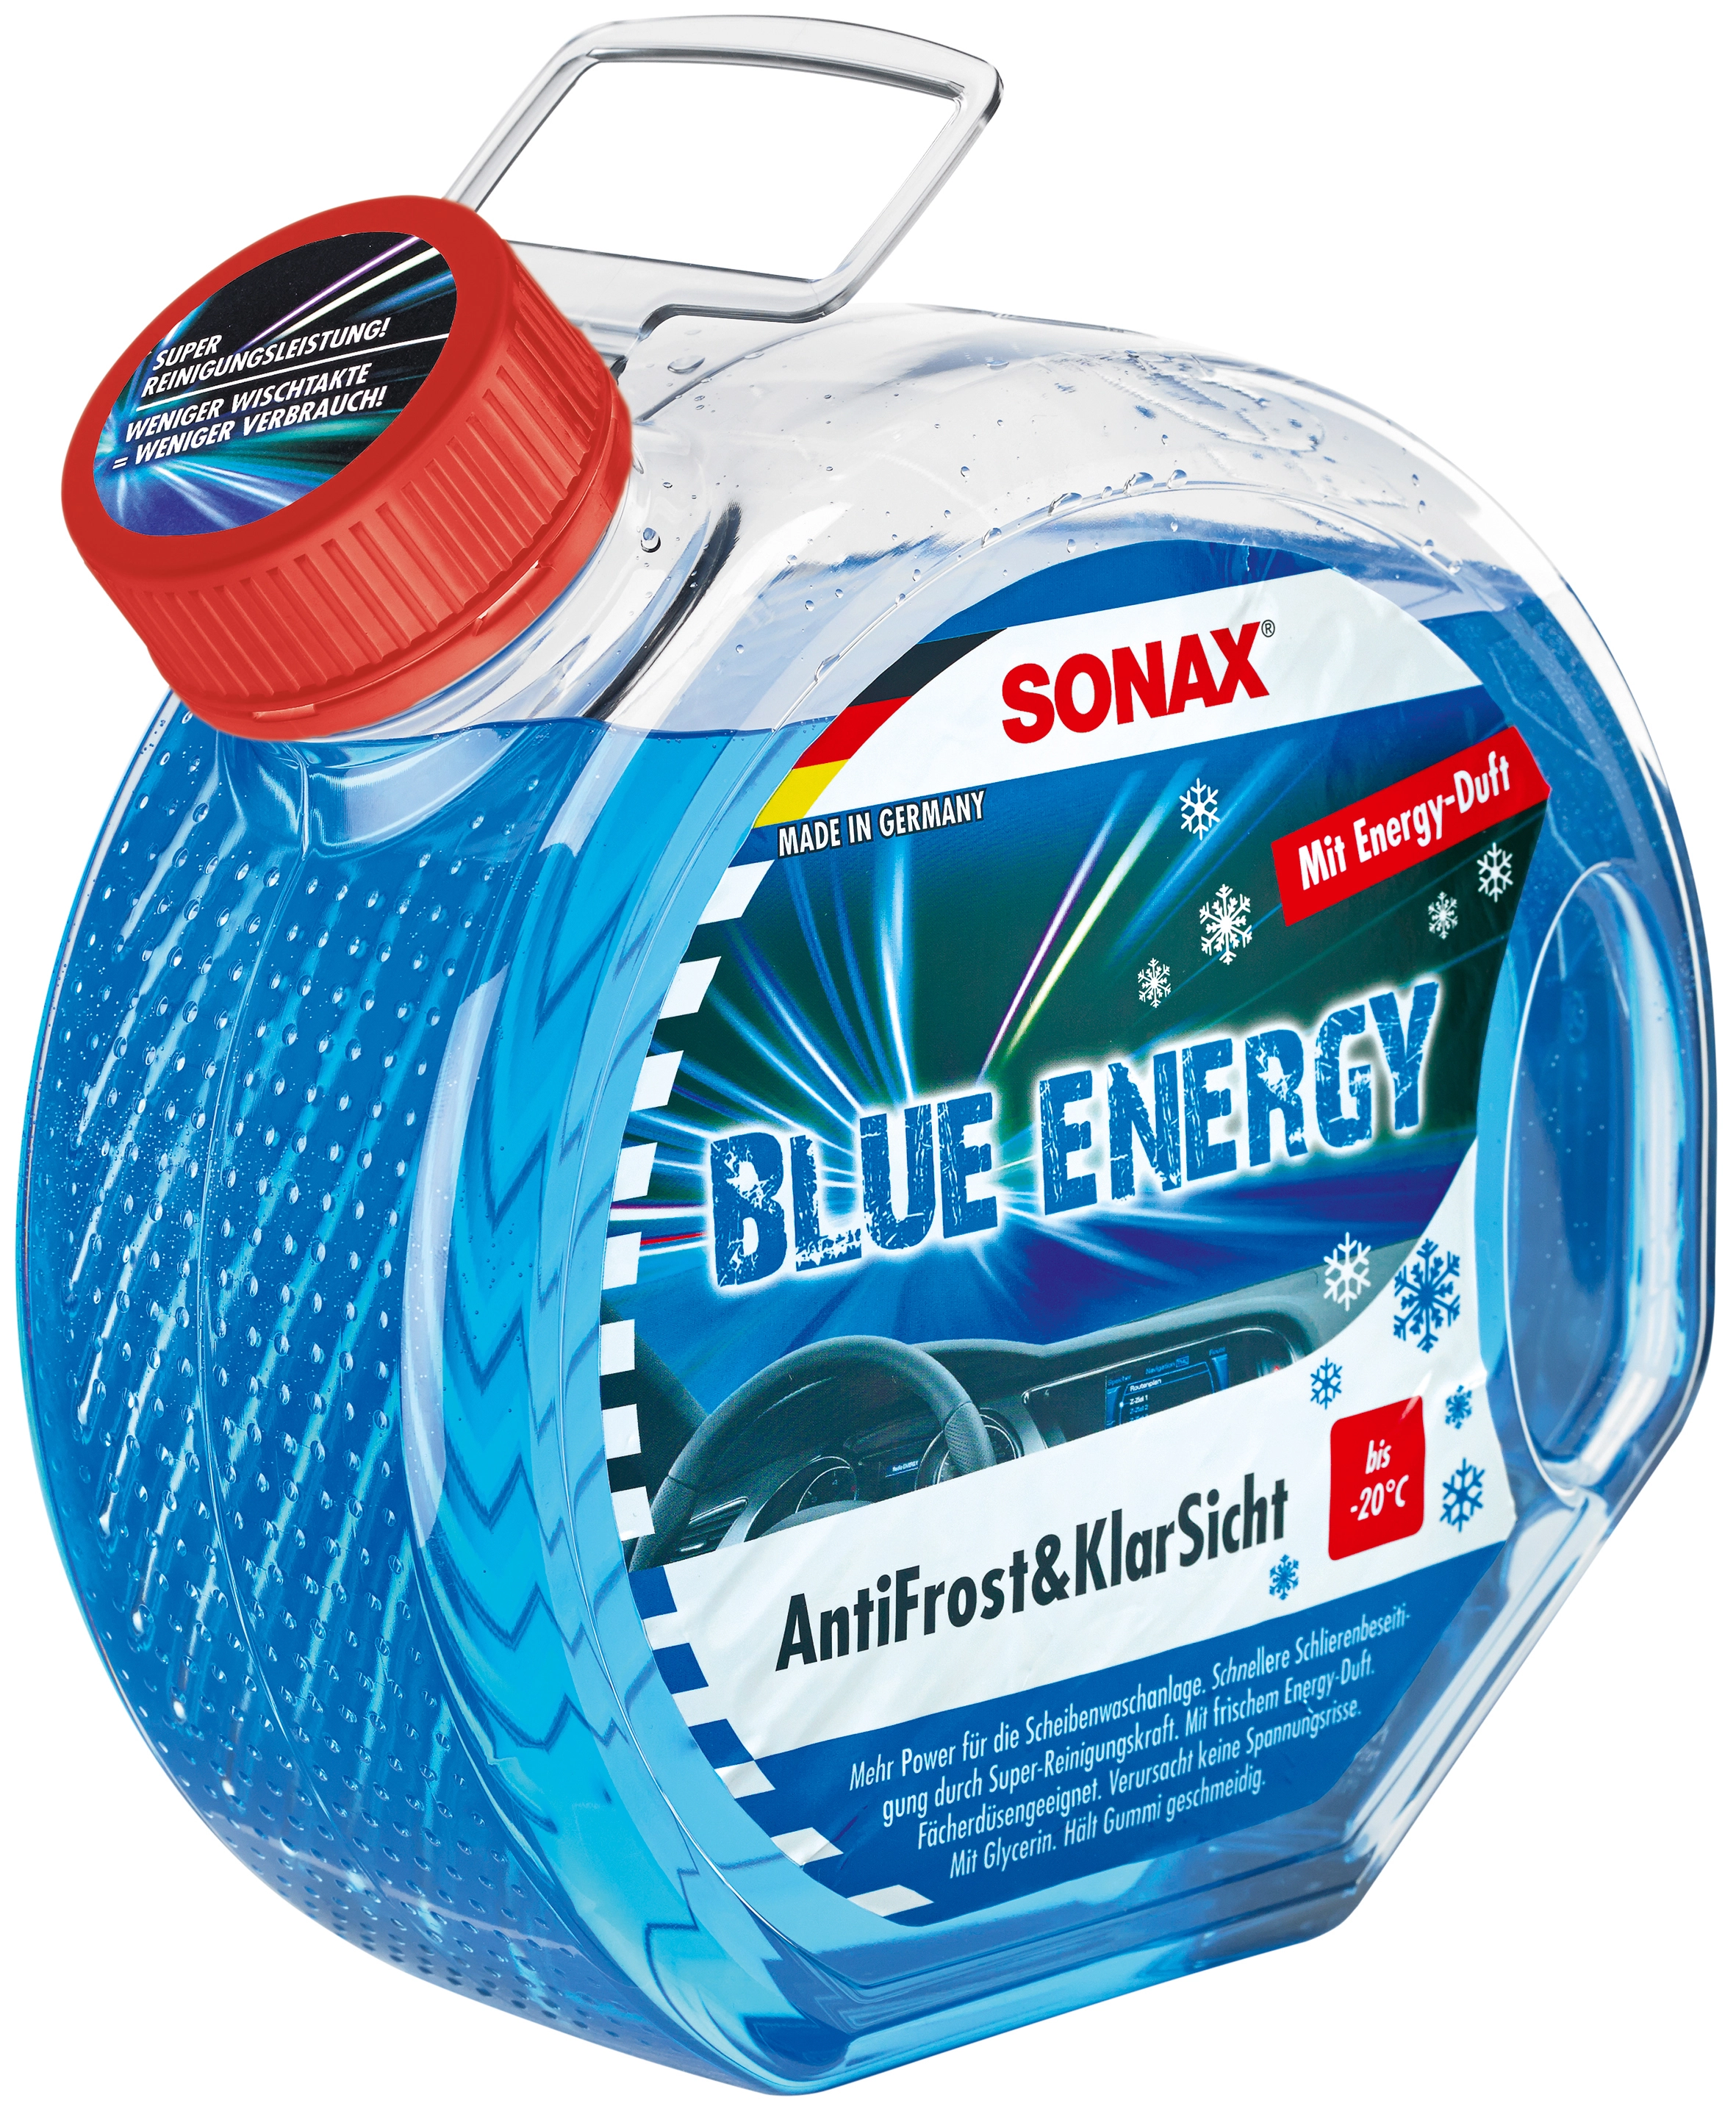 Sonax Antifrost & Klarsicht Blue Energy gebrauchsfertig 3 l